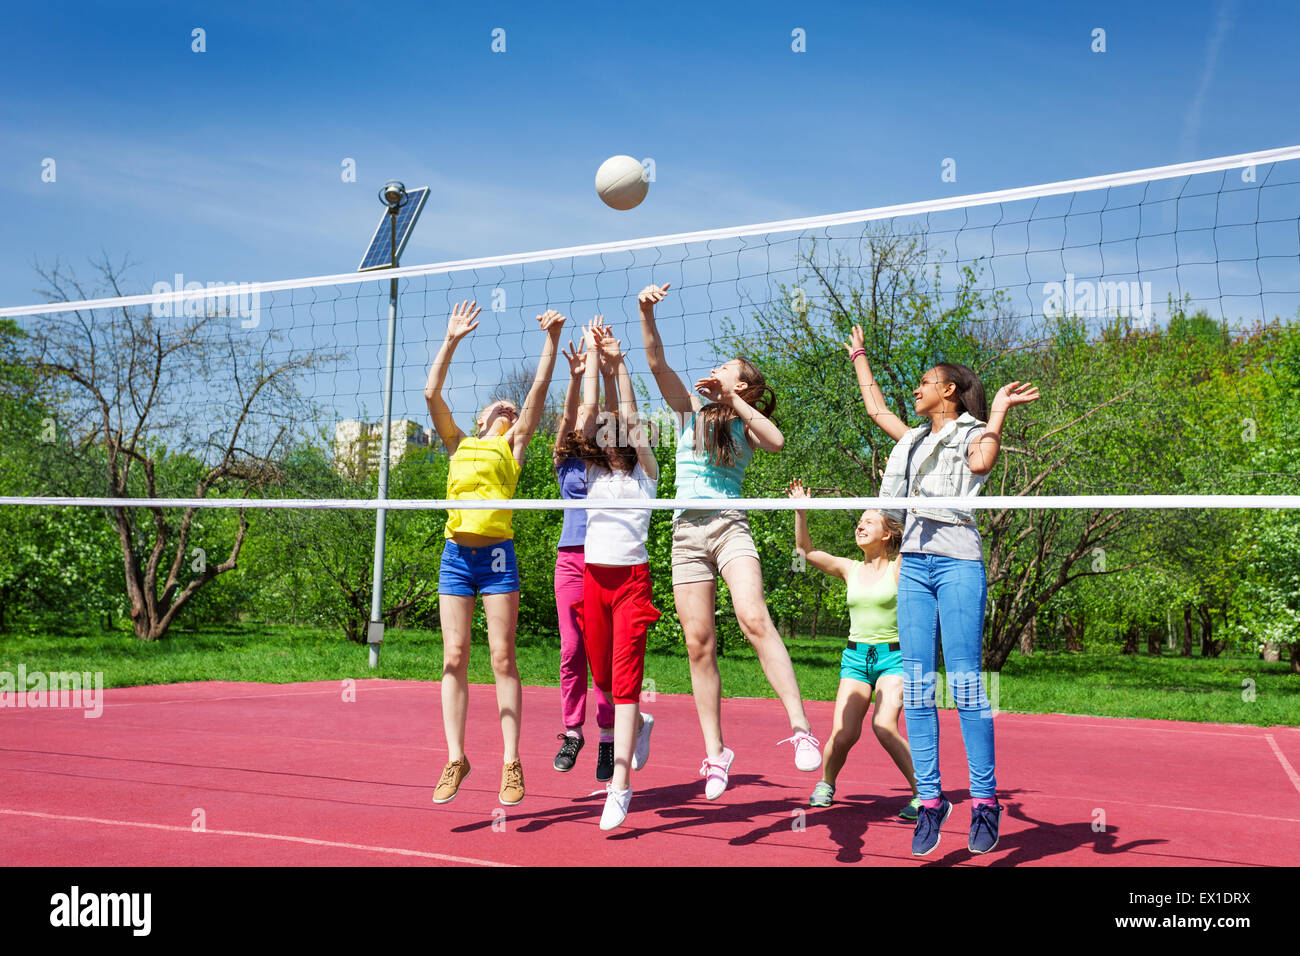 Les adolescents à jouer activement l'équipe de volley-ball Banque D'Images